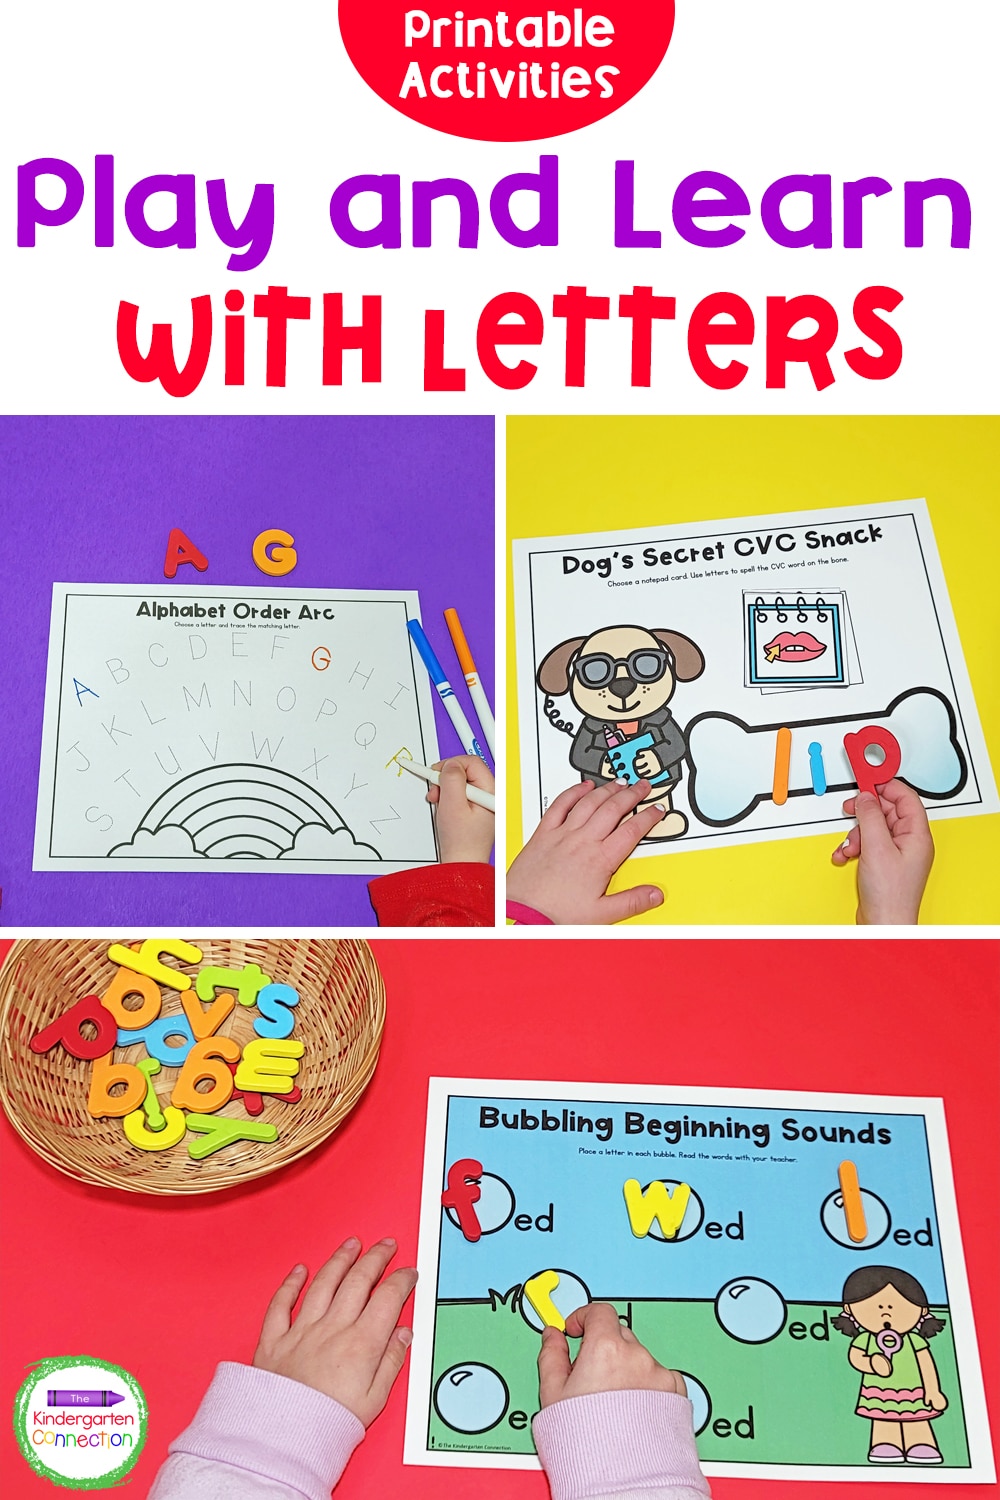 Printable Letter Activities for Pre-K & Kindergarten